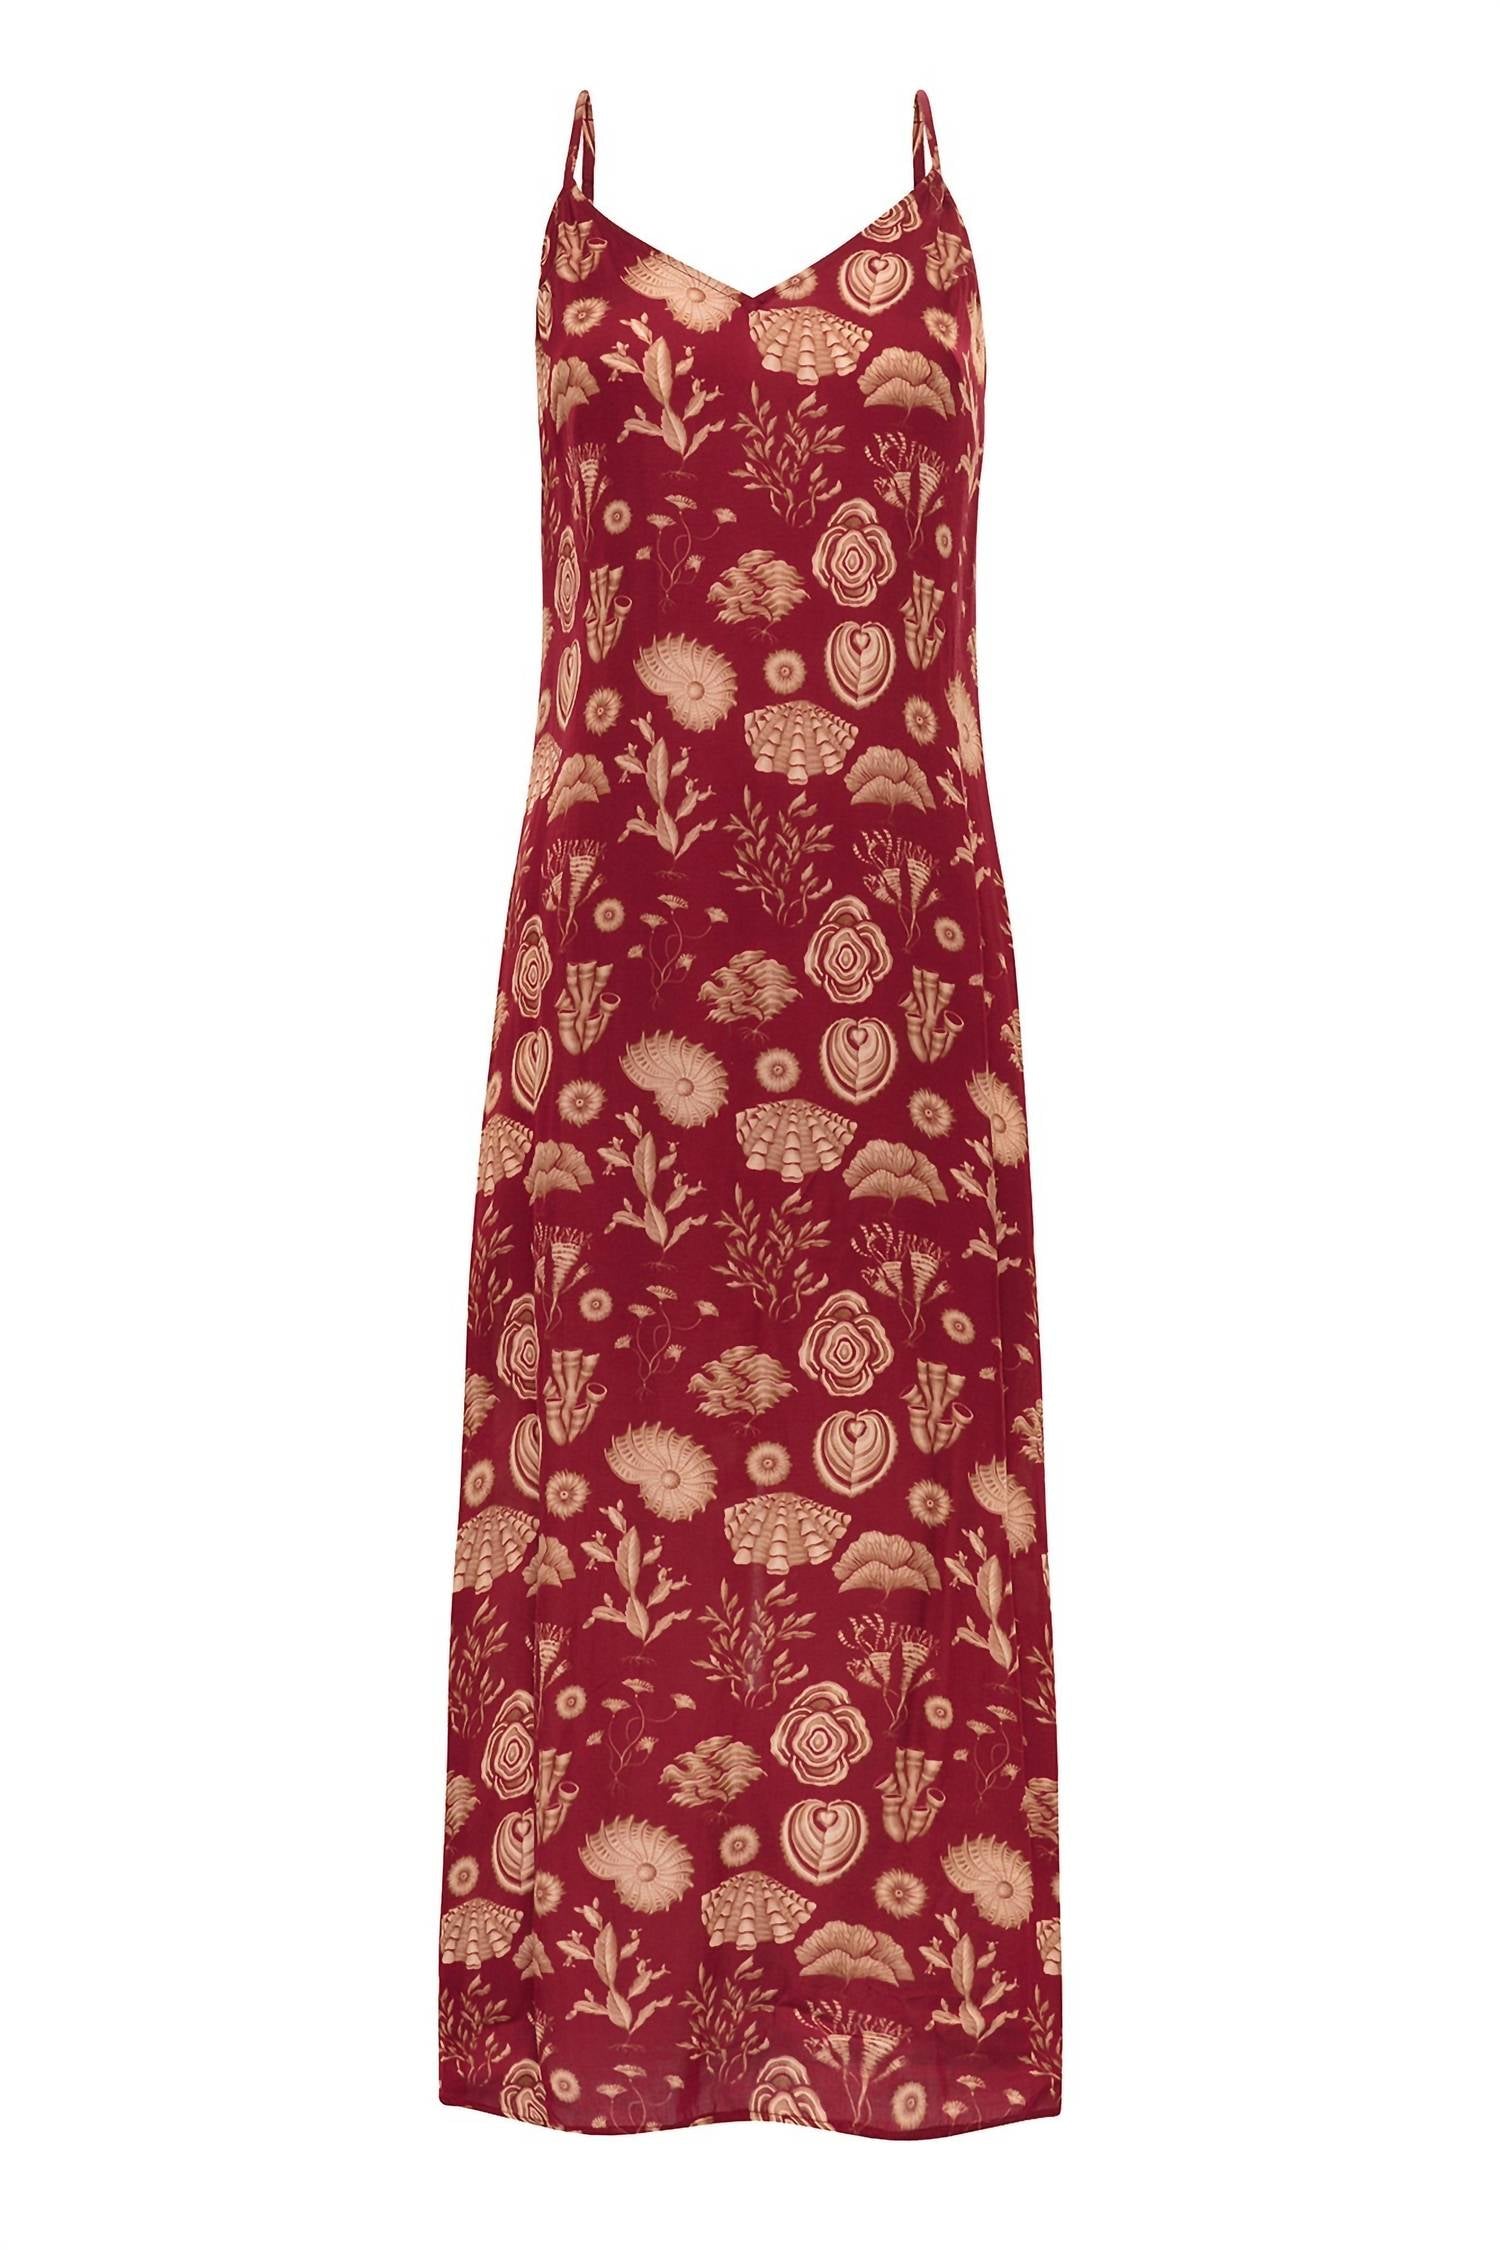 Carolina K Sydney Slip Dress In Corals Burgundy In Red